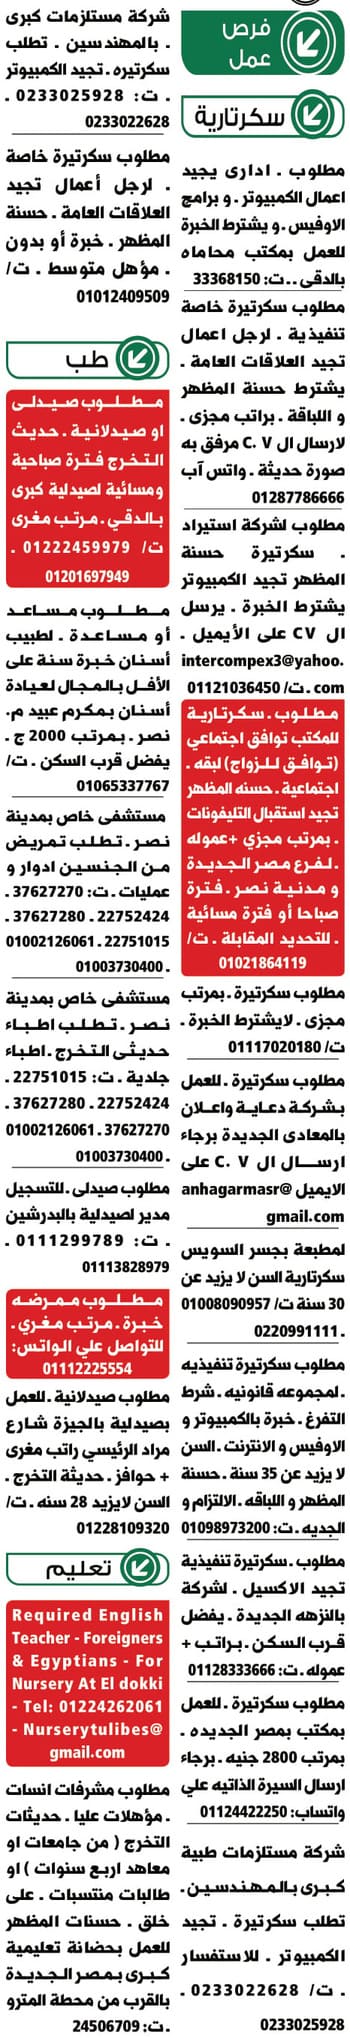 اعلانات جريدة الاهرام والوسيط ليوم 26 نوفمبر 2020 بمختلف التخصصات والمجالات